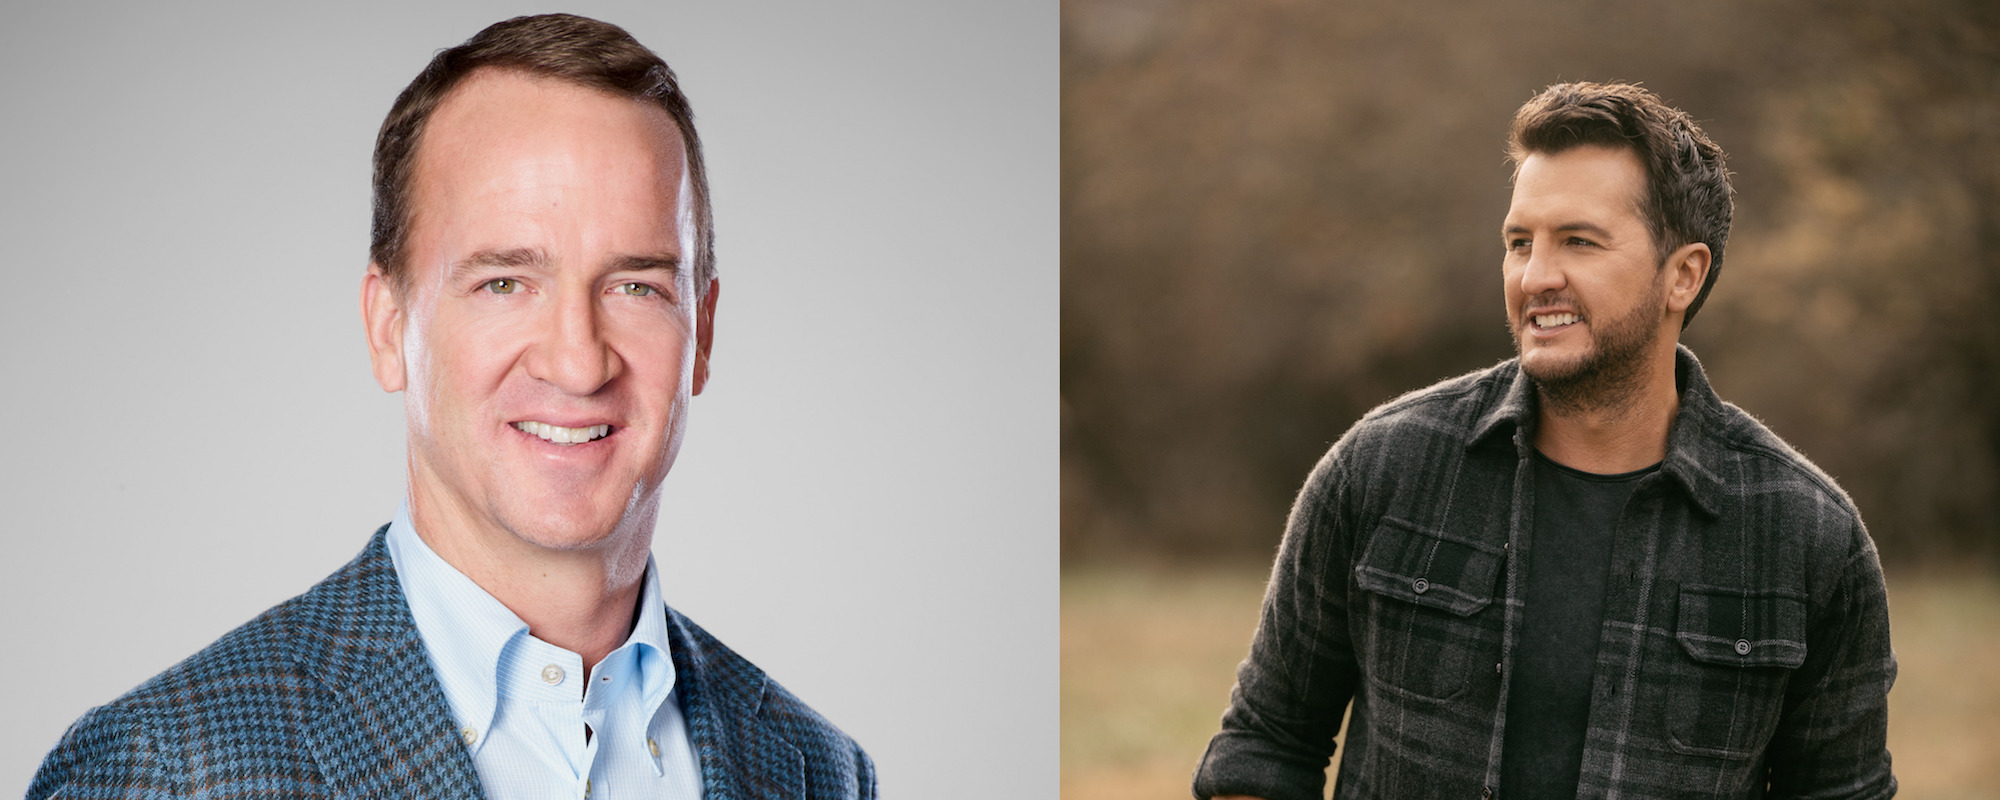 Luke Bryan and Peyton Manning Return to Host CMA Awards